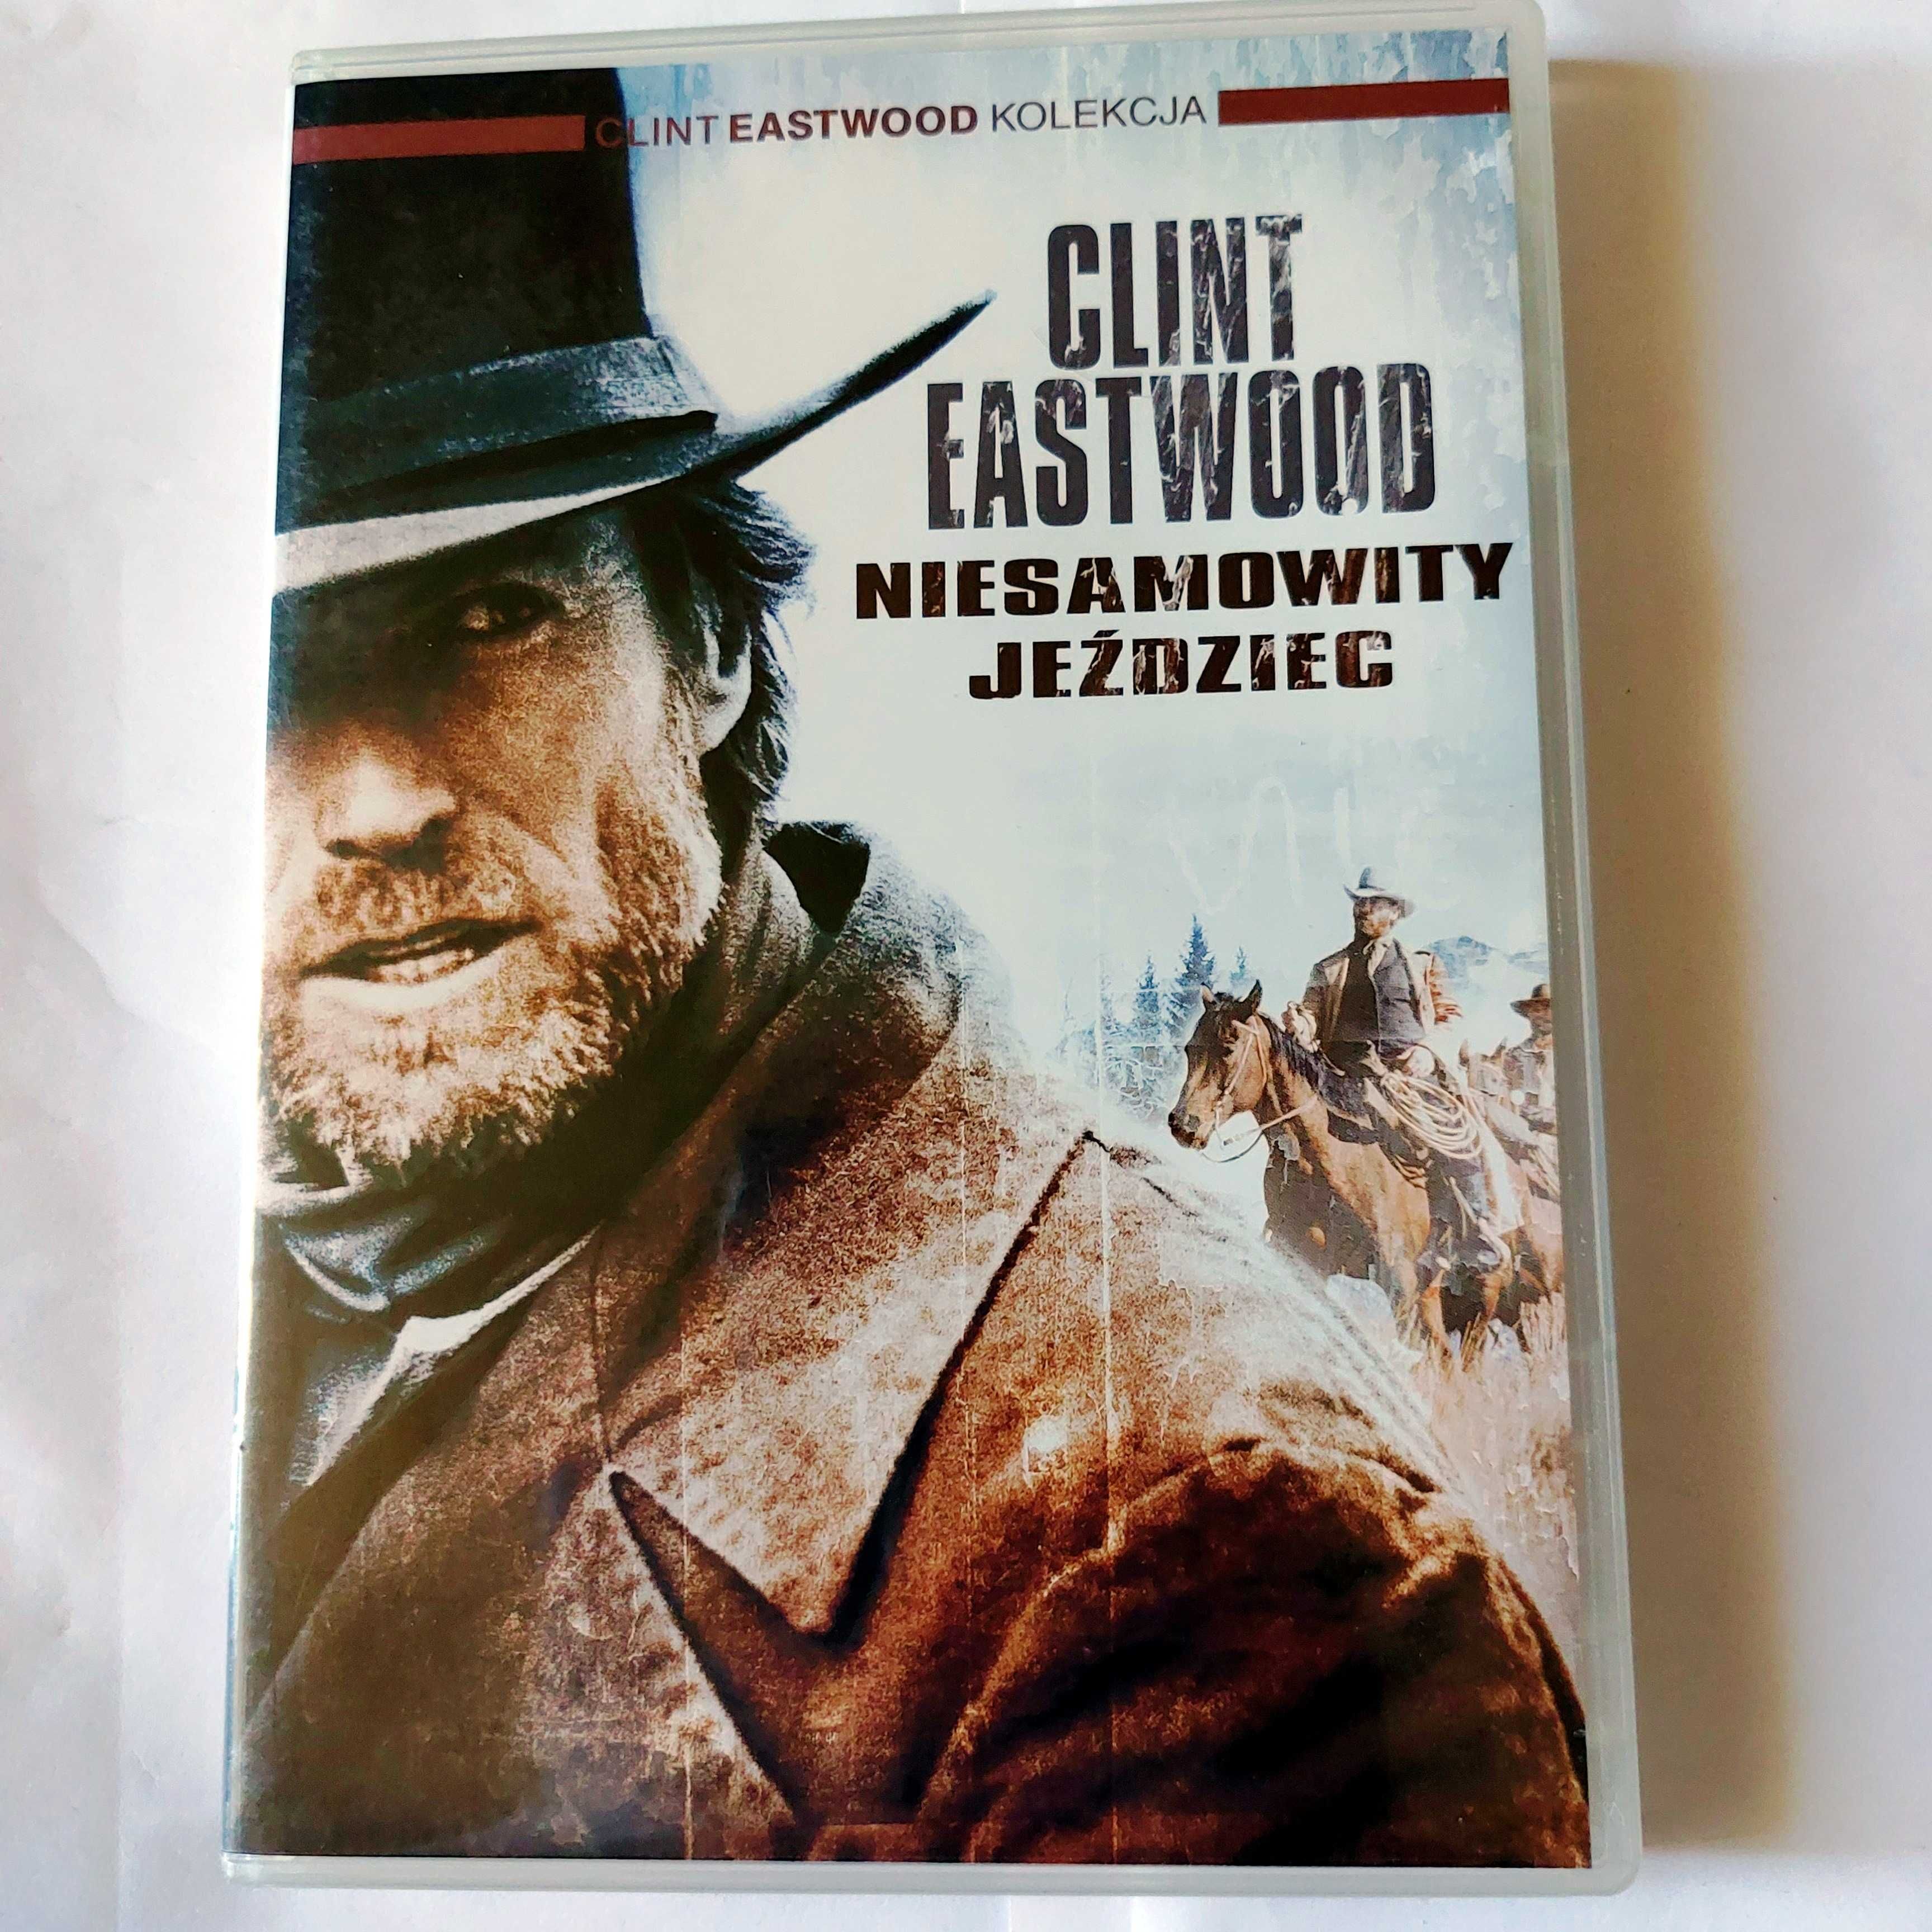 NIESAMOWITY JEŹDZIEC | dobry film z Clintem Eastwoodem na DVD